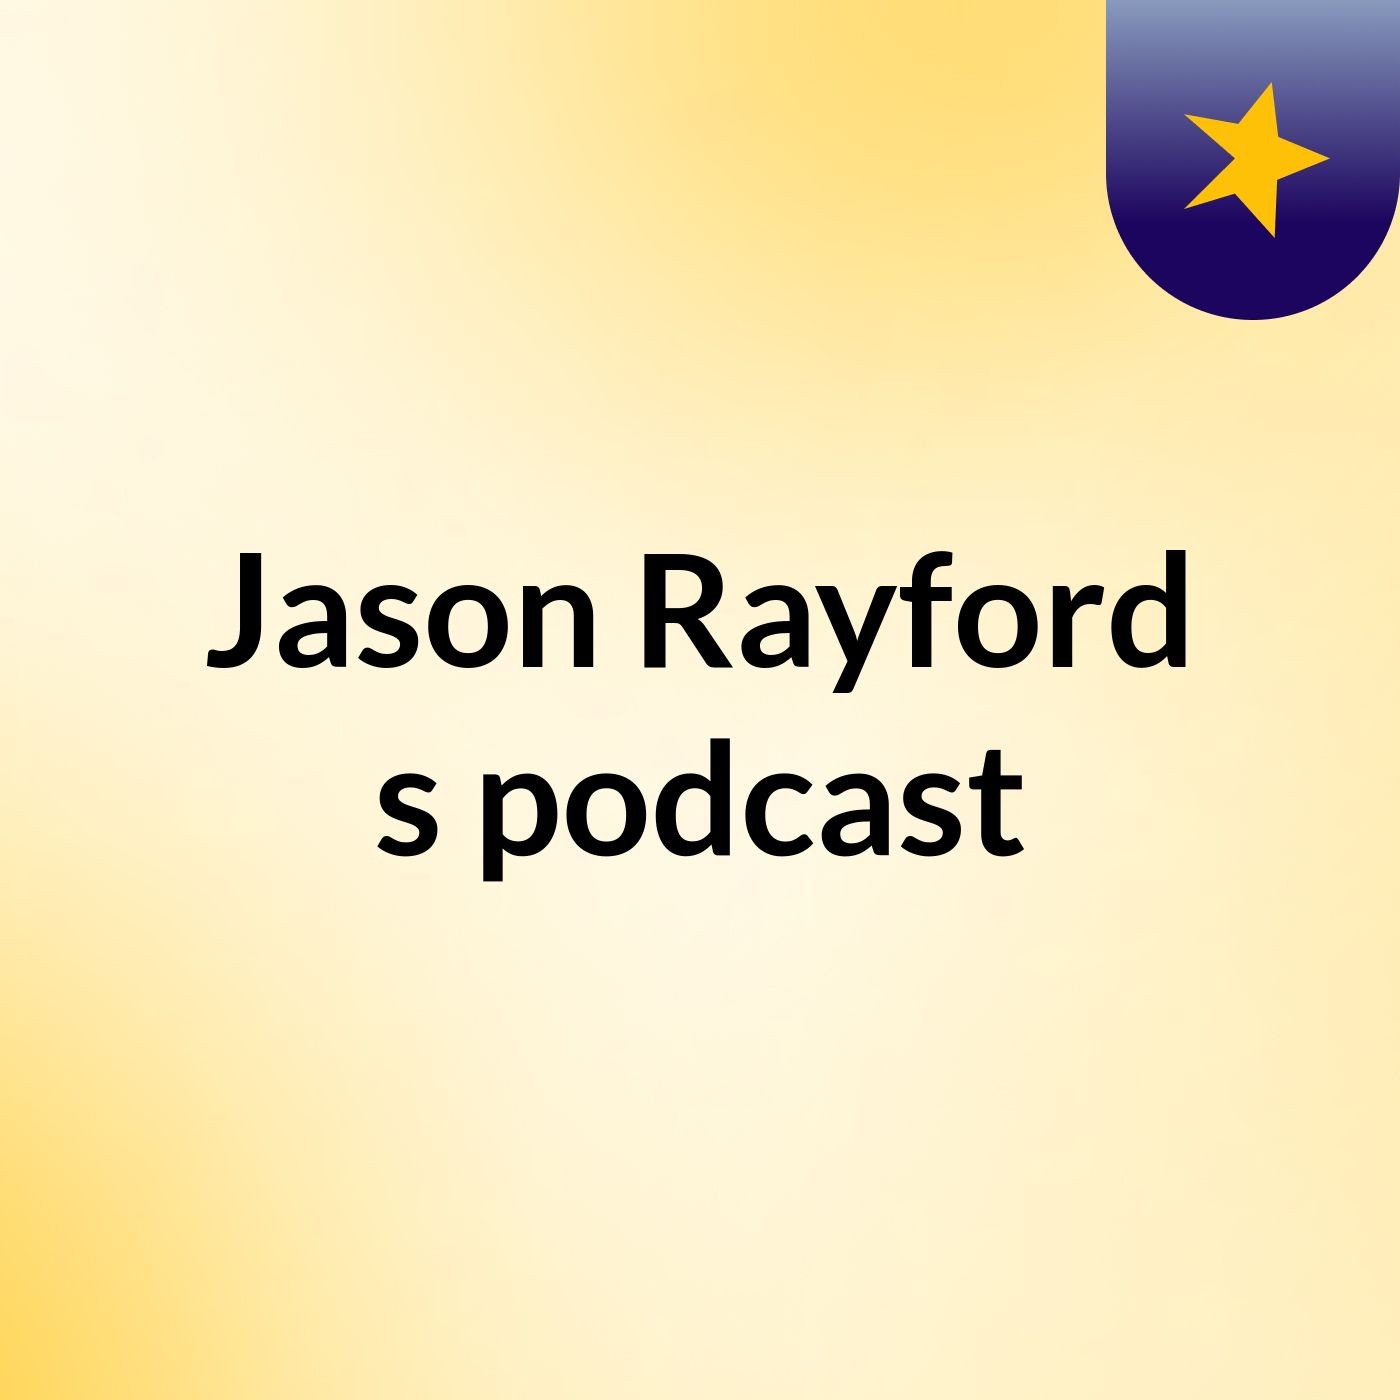 Jason Rayford's podcast